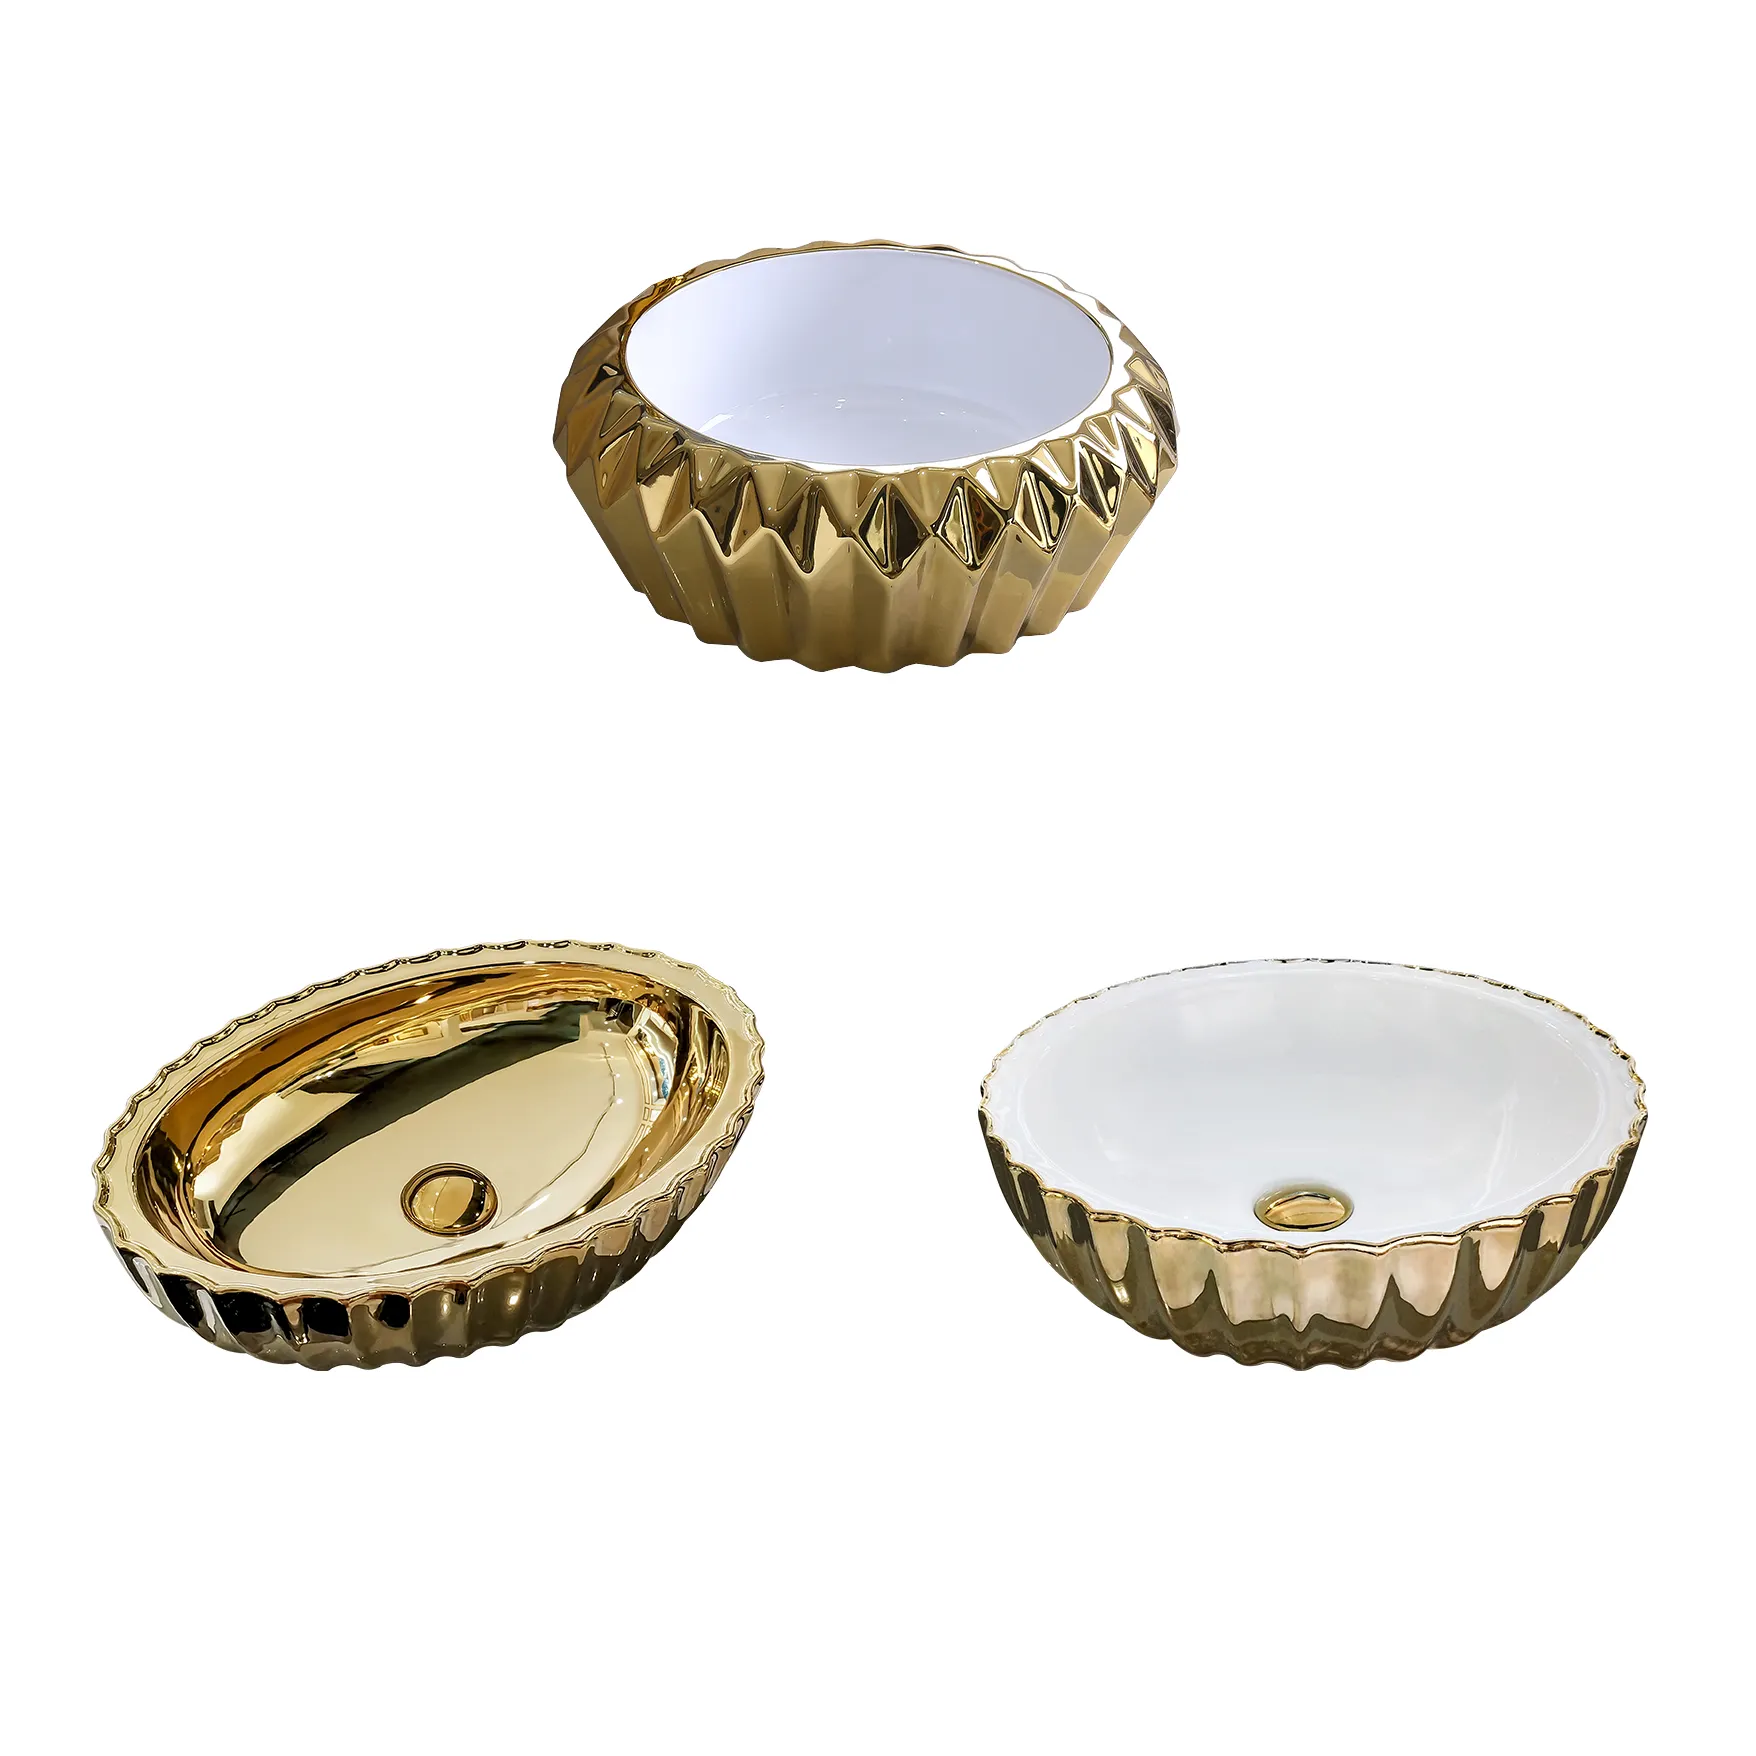 Alta qualidade ouro colorido contador top louças sanitárias lavabo banheiro royal art design bacia cerâmica lavatório